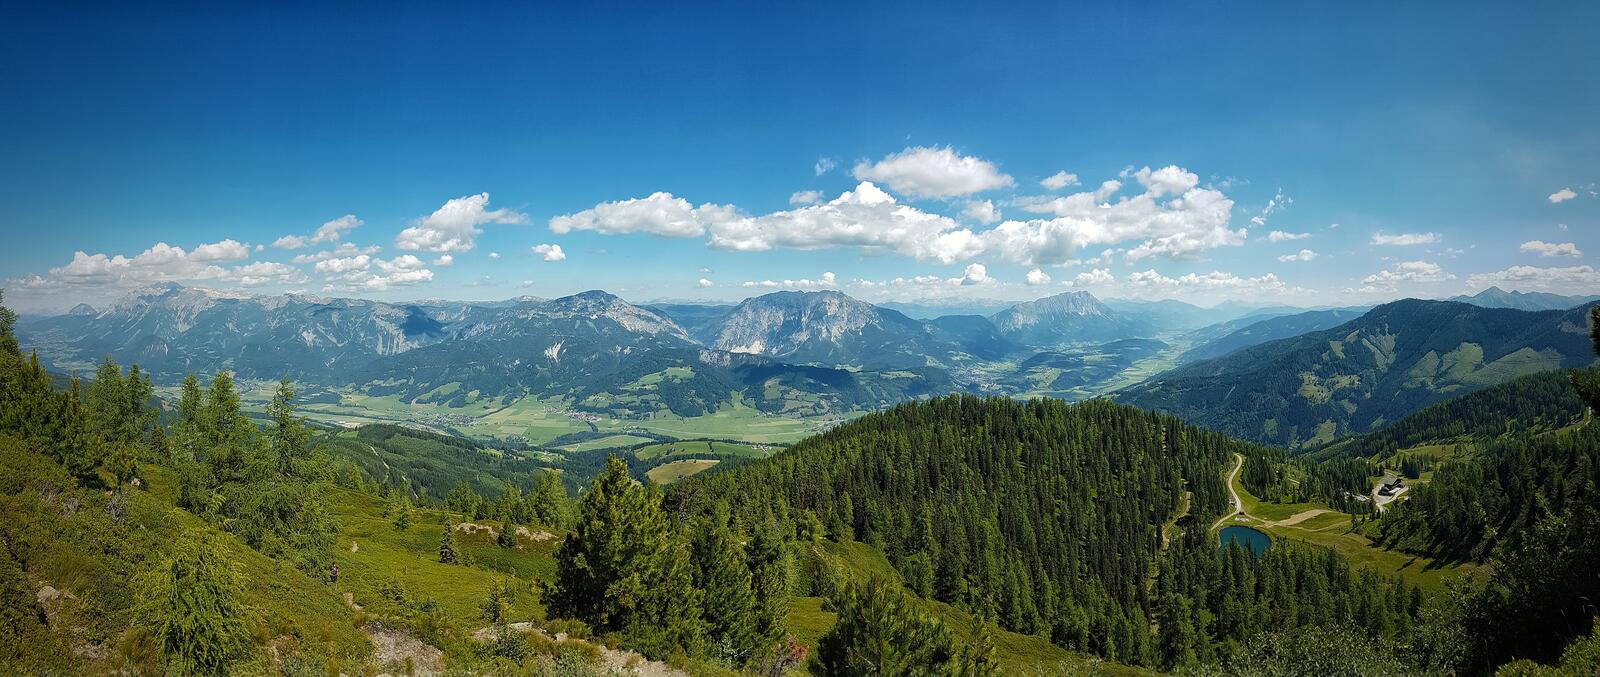 免费照片奥地利山区的迷人风光